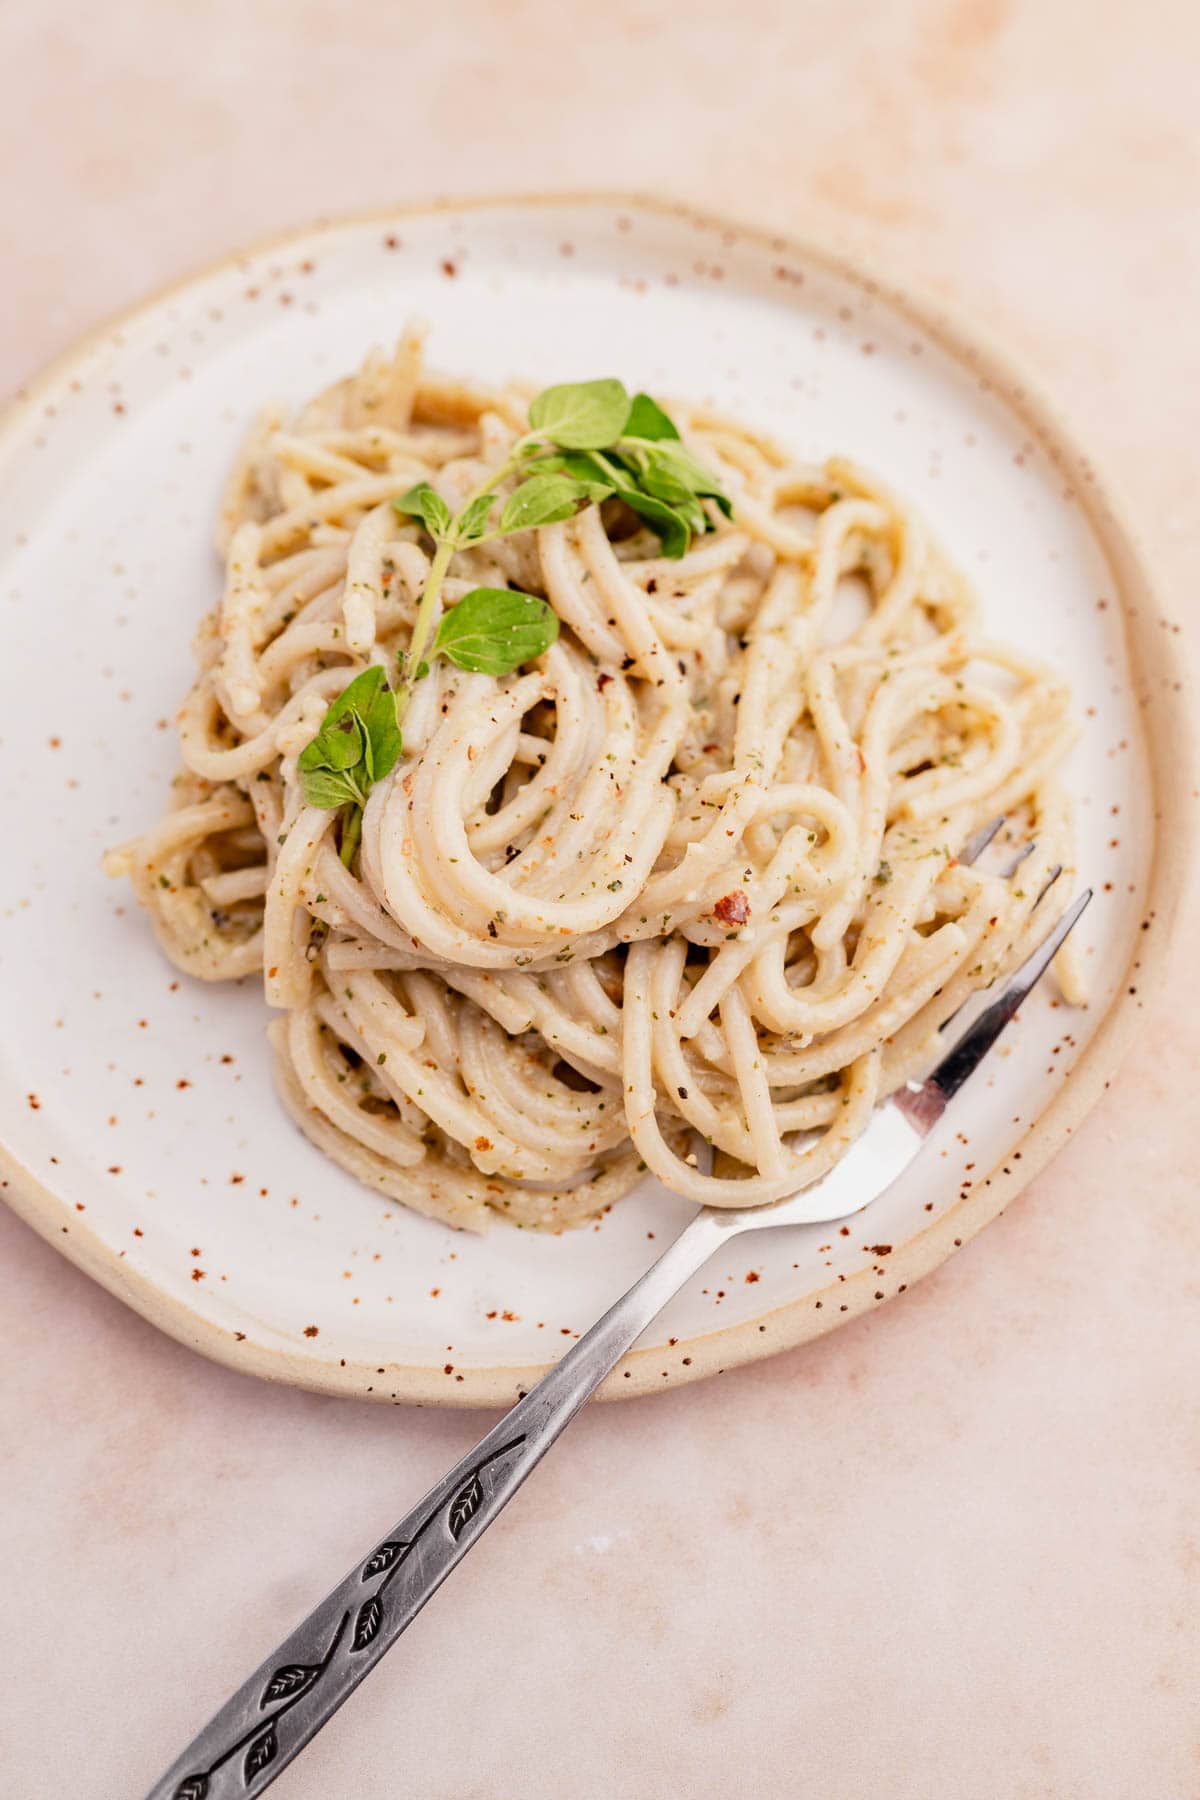 A fork stuck in a creamy oregano pasta.